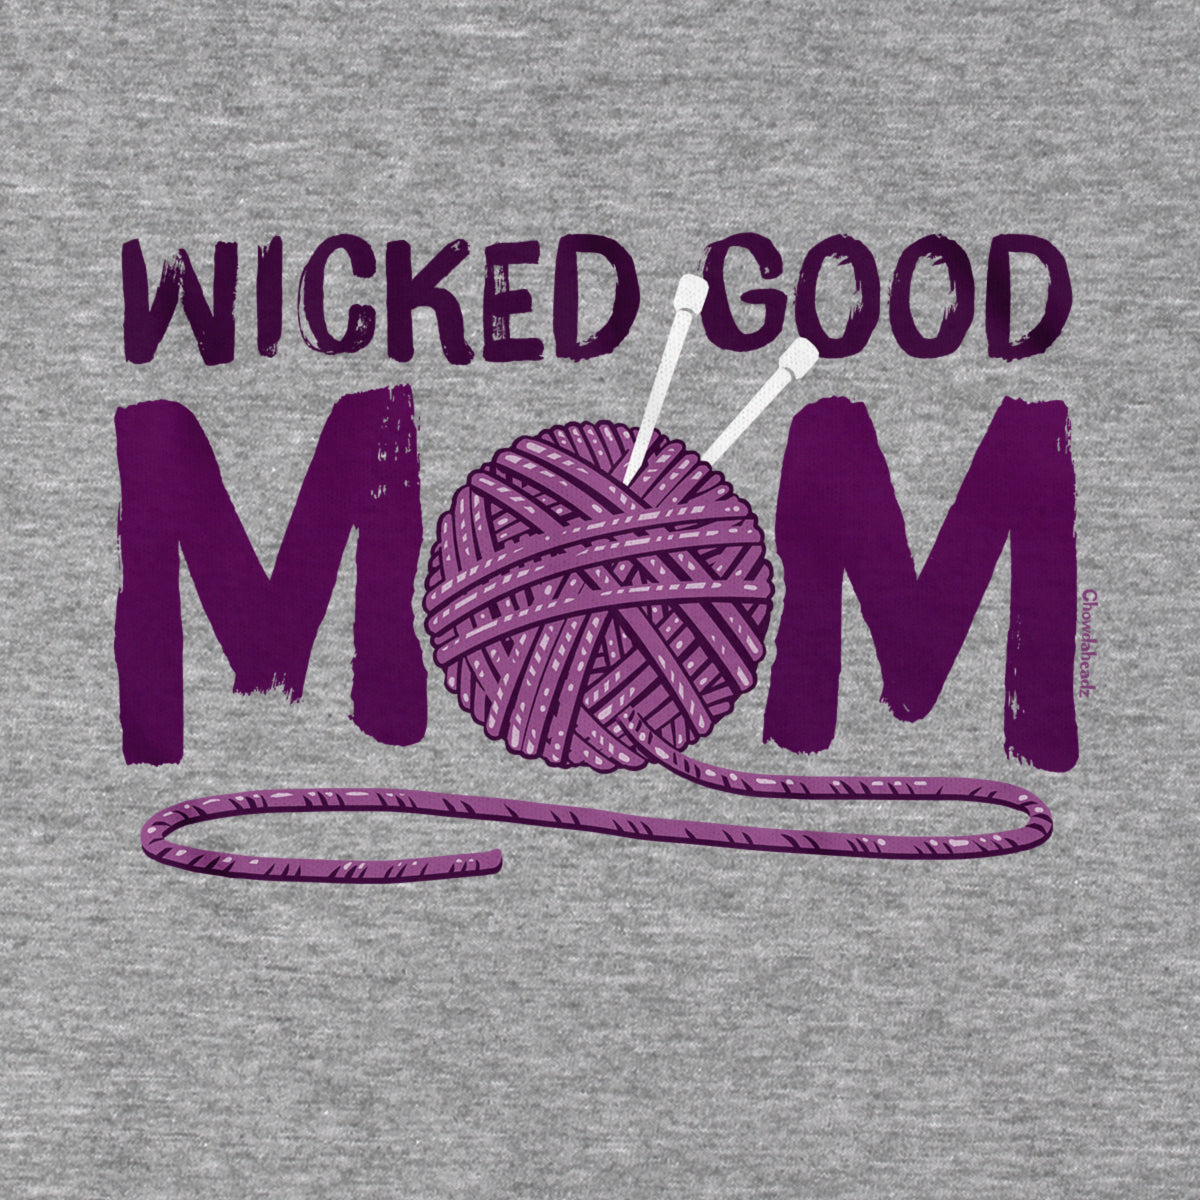 Wicked Good Mom Yarn T-Shirt - Chowdaheadz